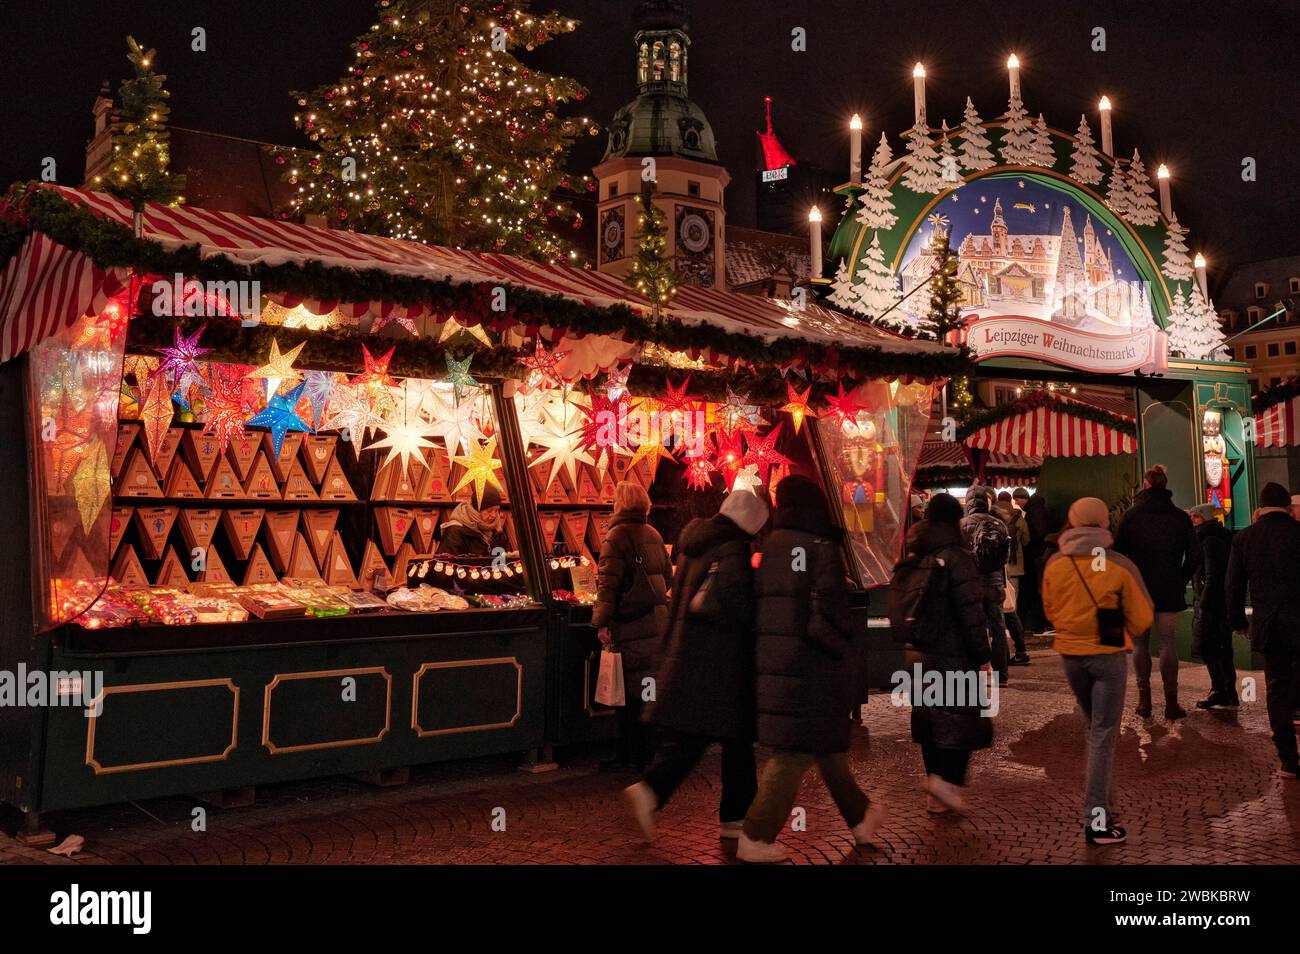 Weihnachtsmarkt am Leipziger Marktplatz, Stockfoto